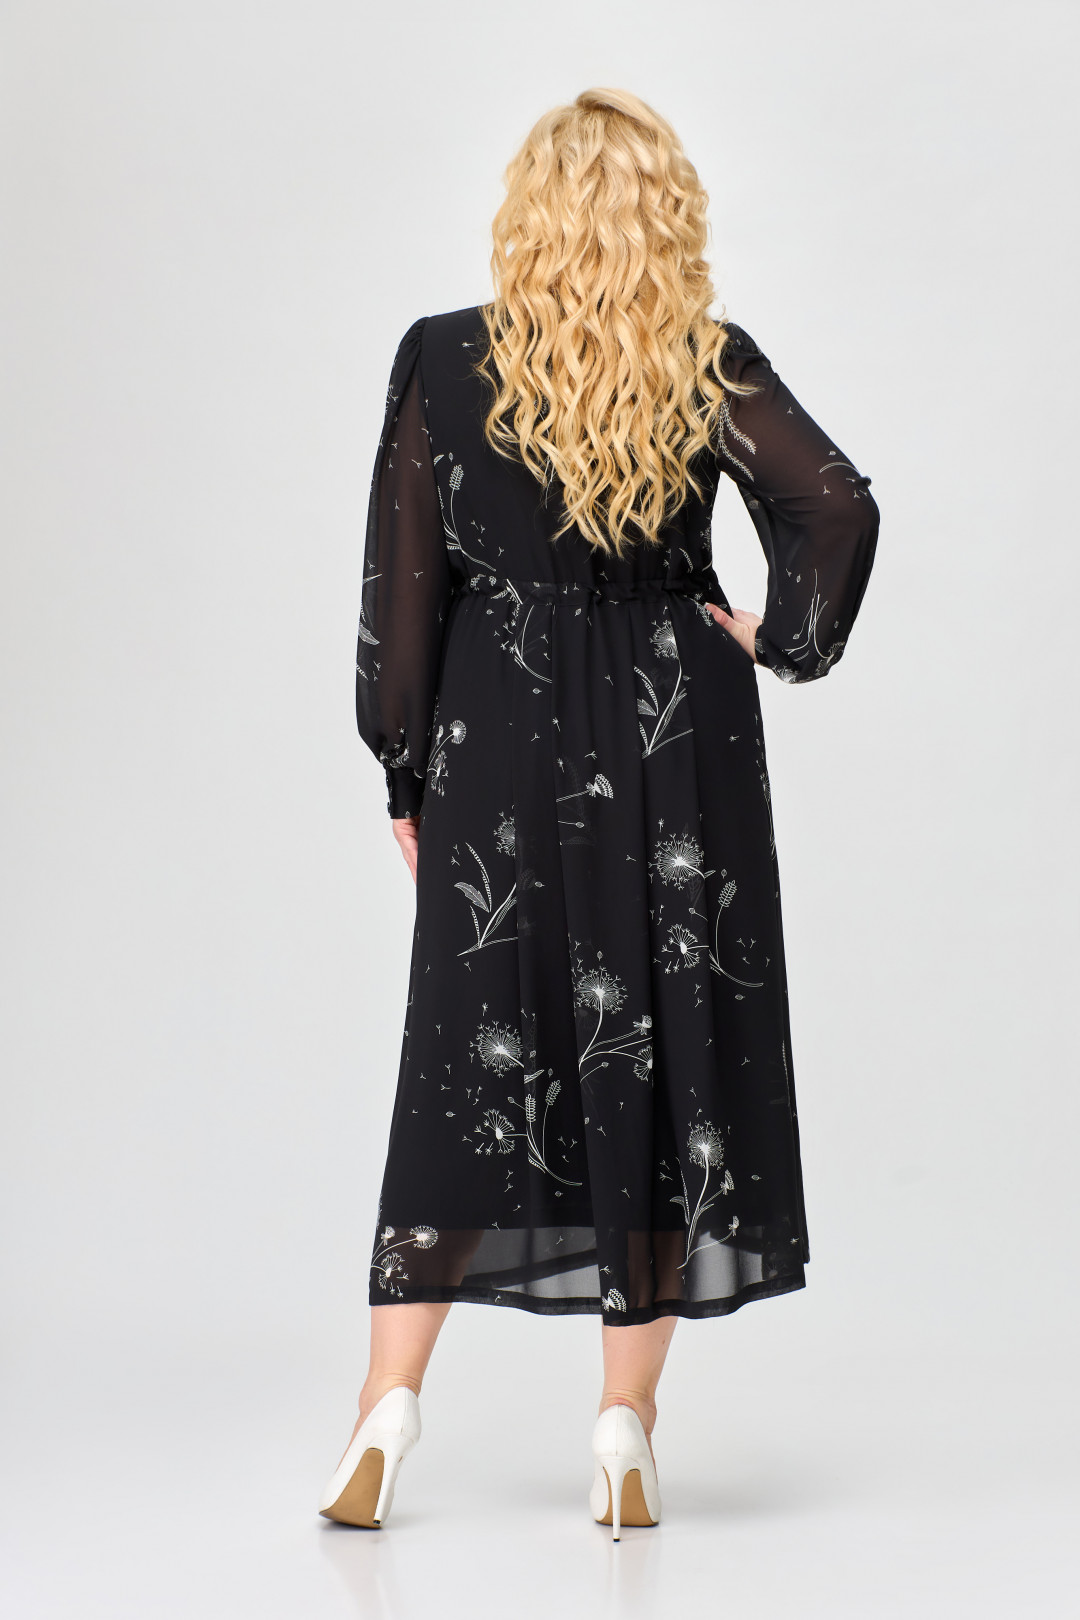 Платье Светлана-Стиль 1765 черный+цветы